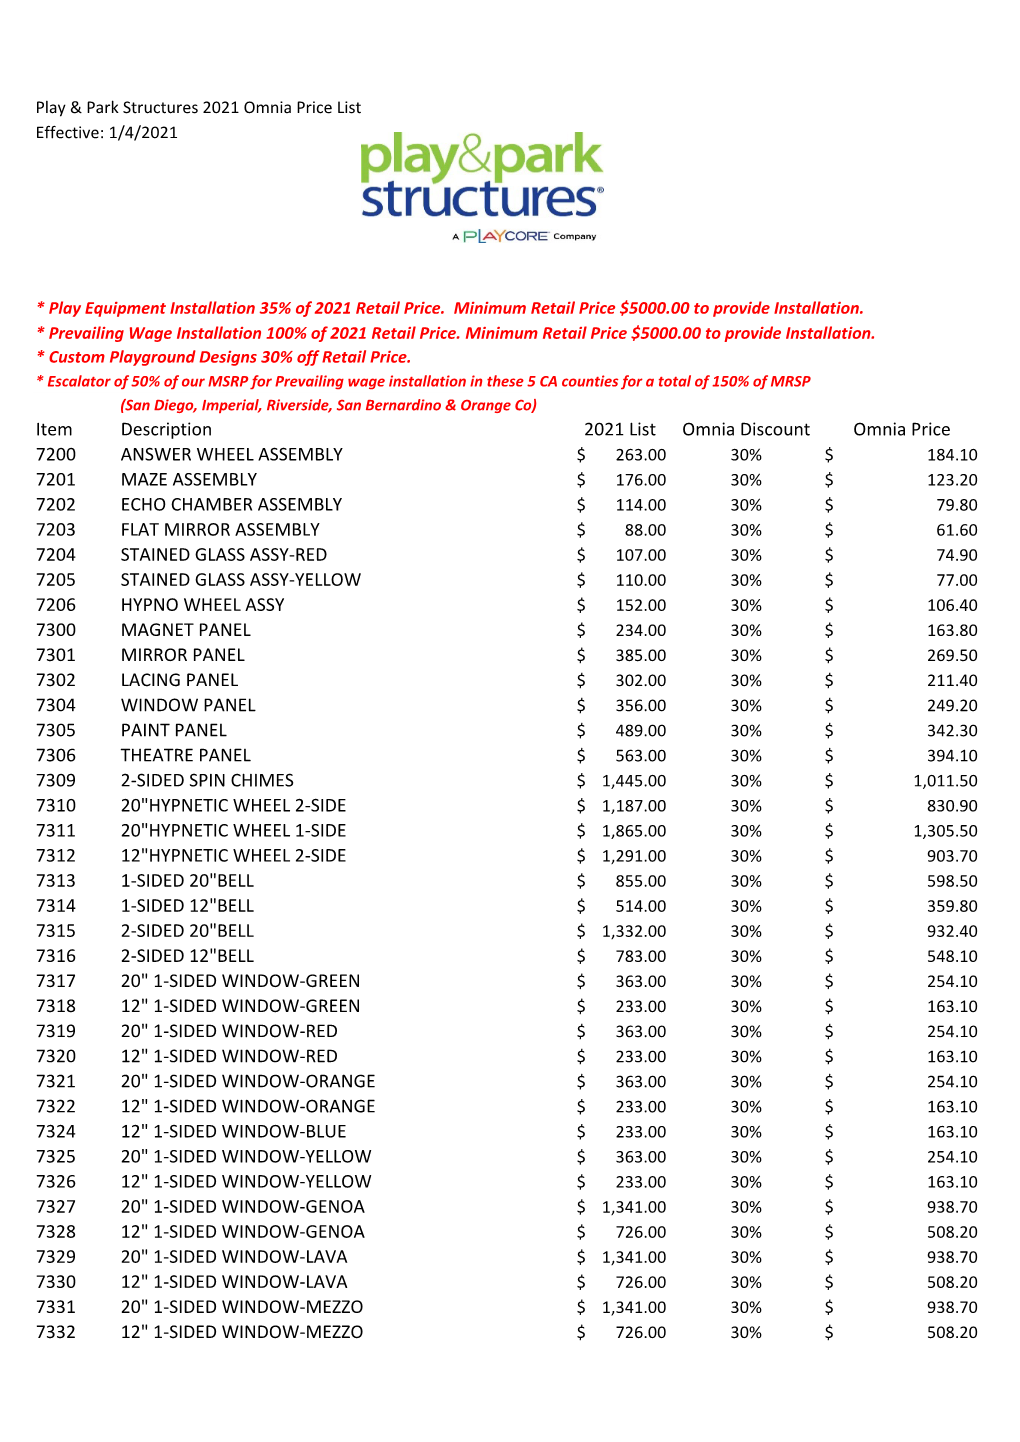 Item Description 2021 List Omnia Discount Omnia Price 7200